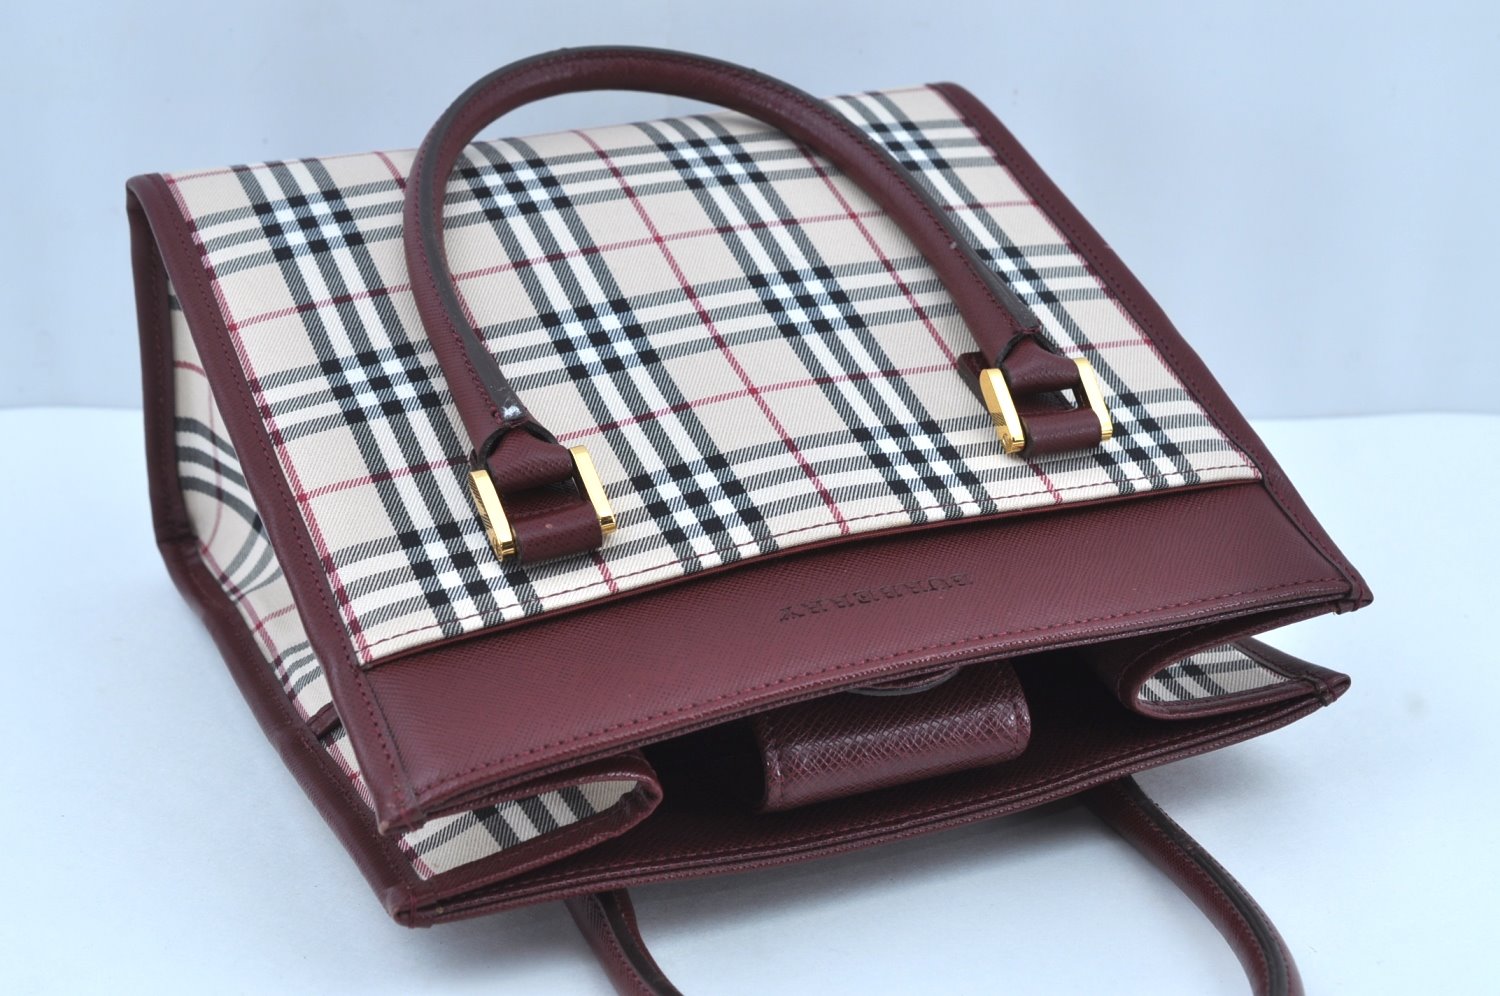 Authentic BURBERRY Vintage Nova Check Canvas Leather Hand Bag Purse Beige 8542H